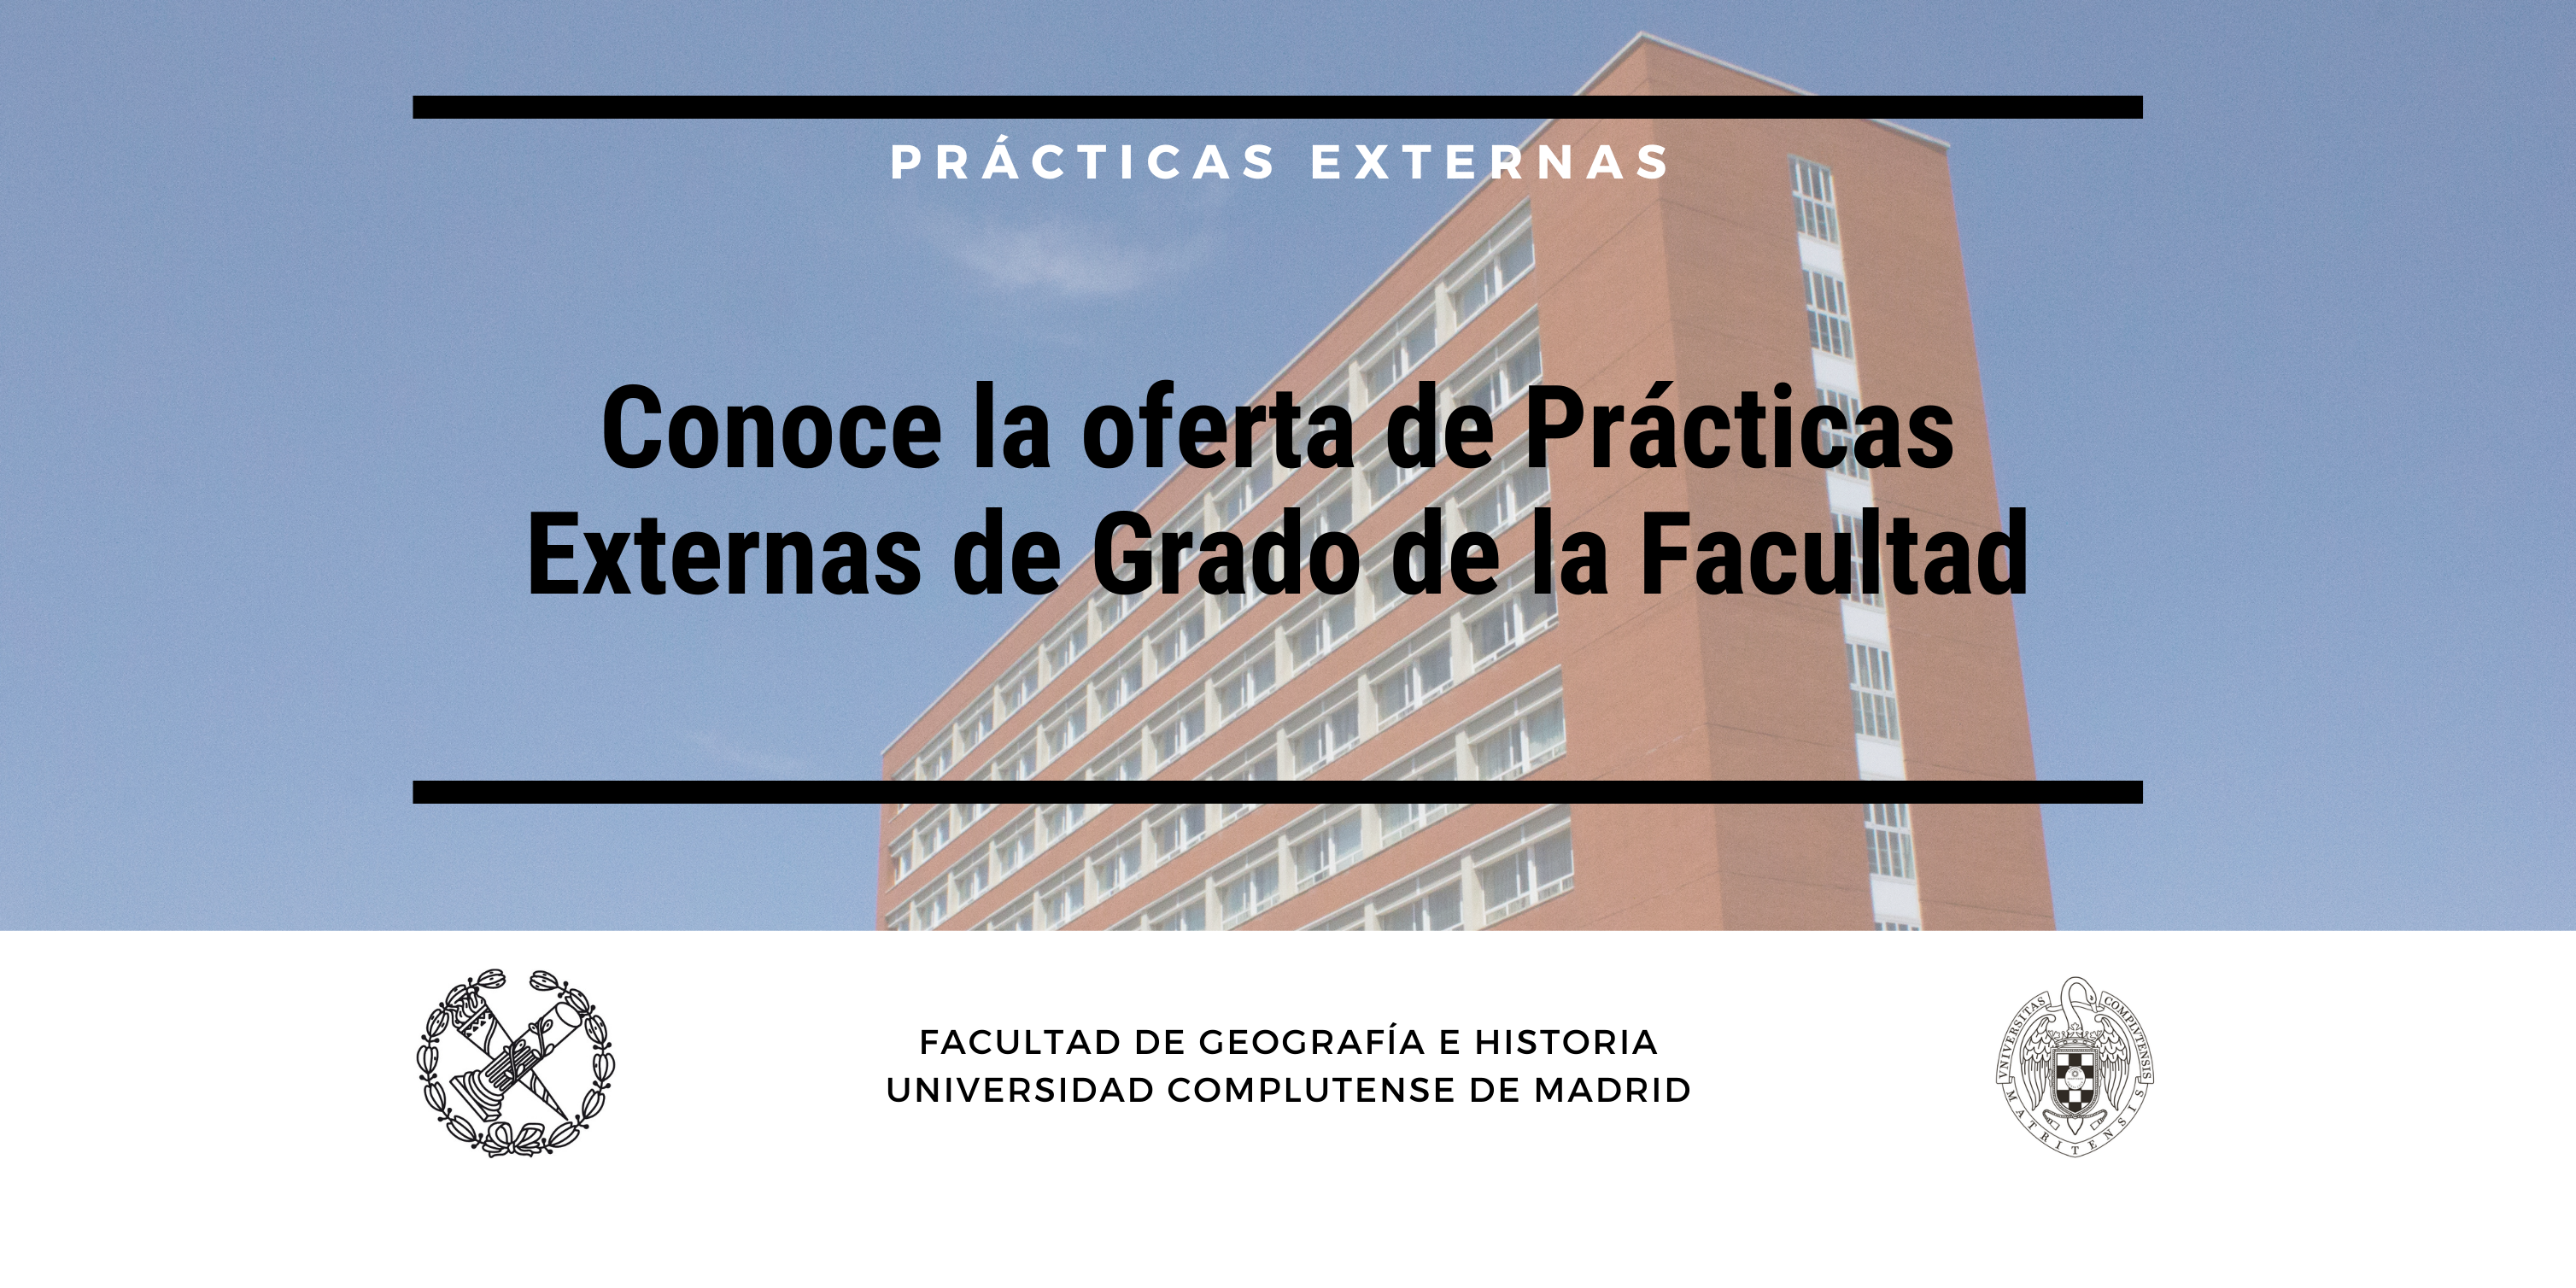 Prácticas Externas de Grado de la Facultad de Geografía e Historia